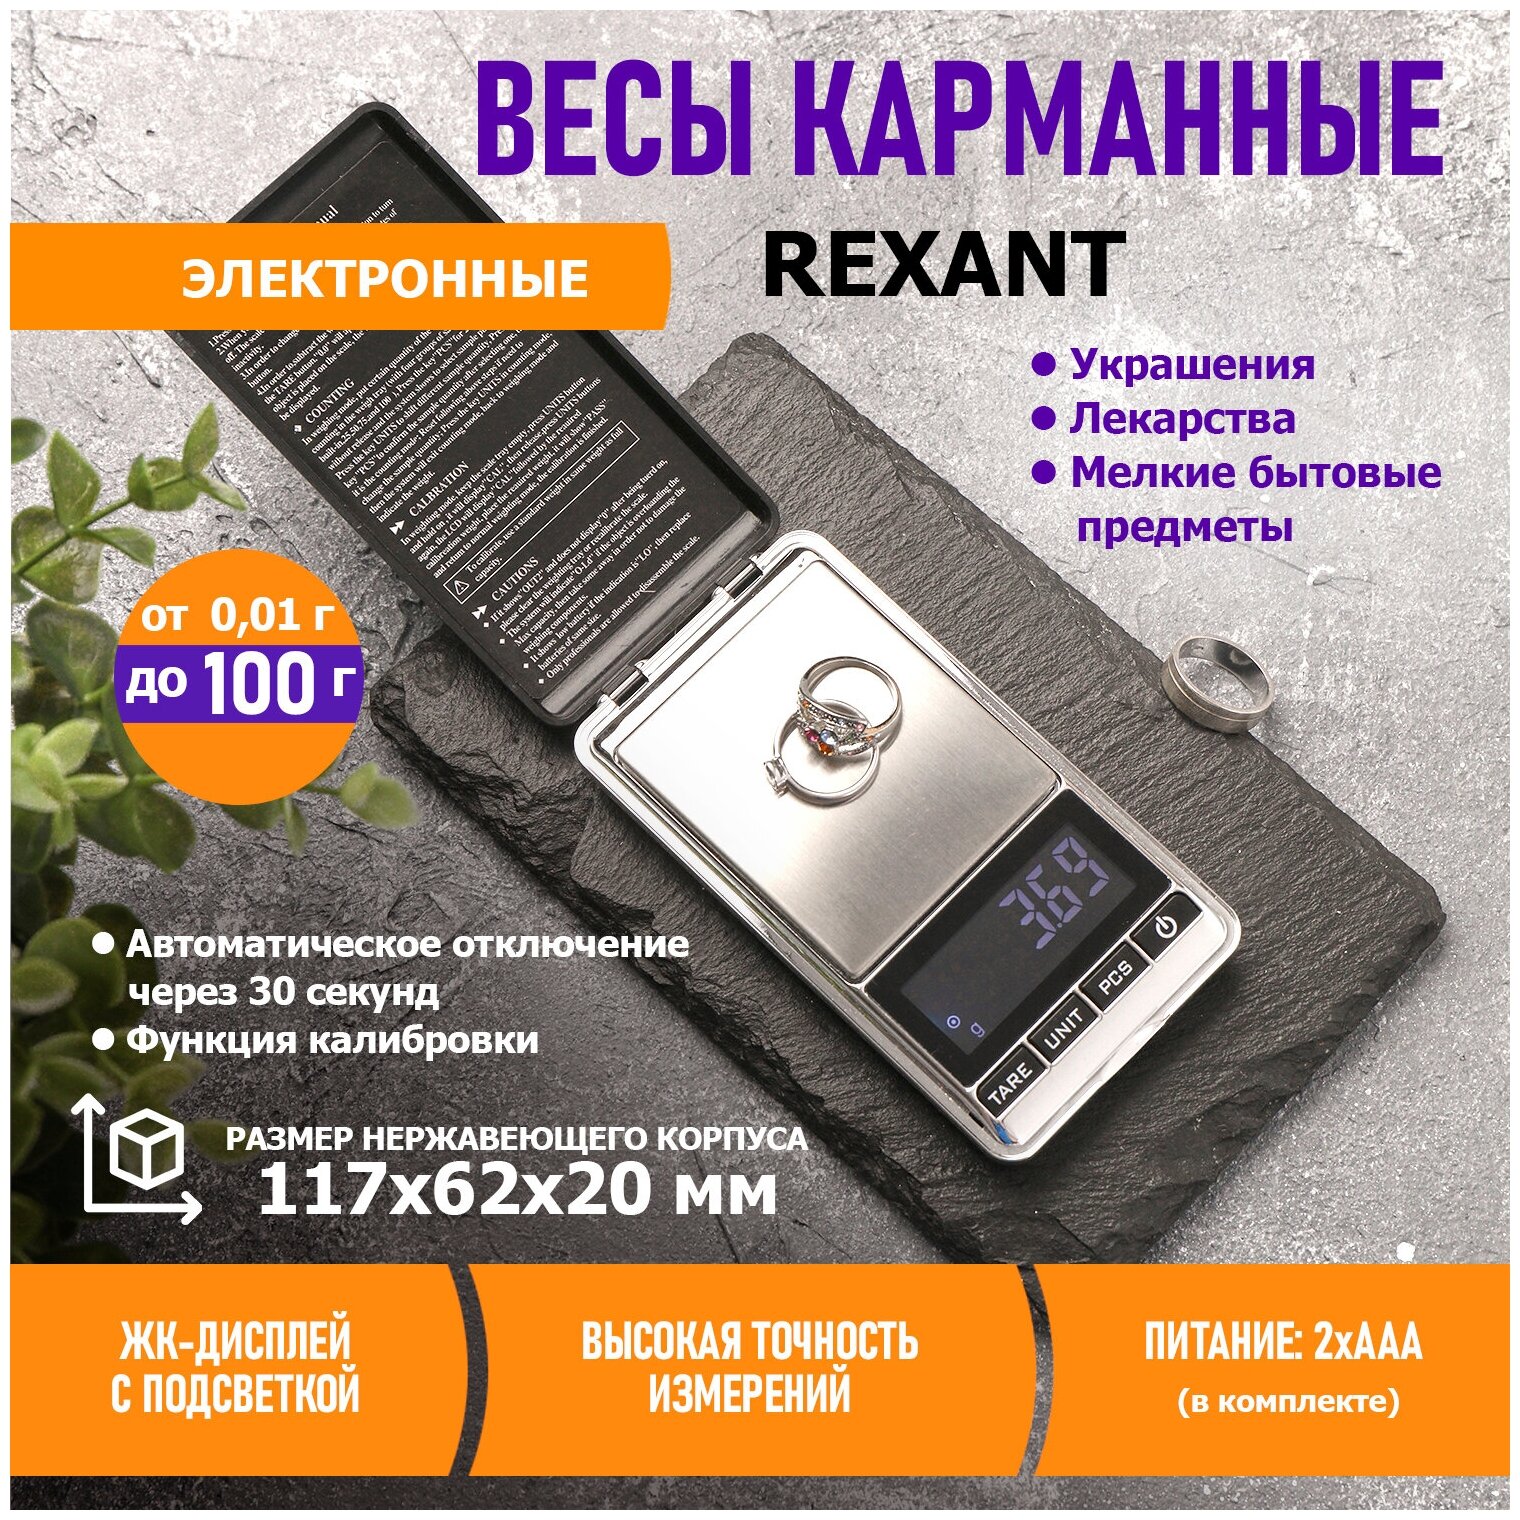 Весы карманные электронные от 0,01 до 100 грамм REXANT